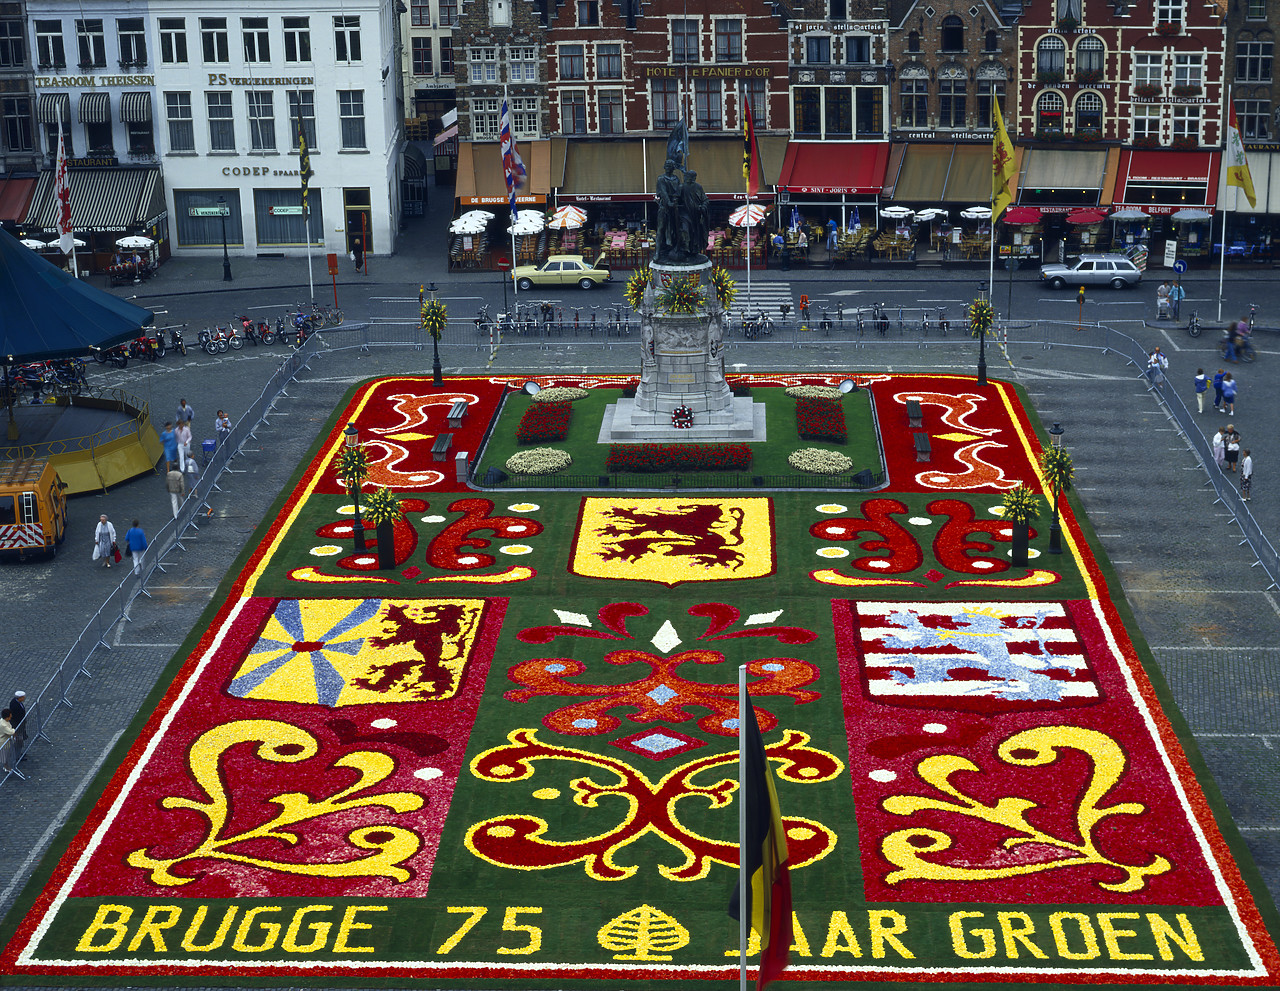 #871038-1 - Brugge Market Square Flower Petel Design, Brugge, Belgium